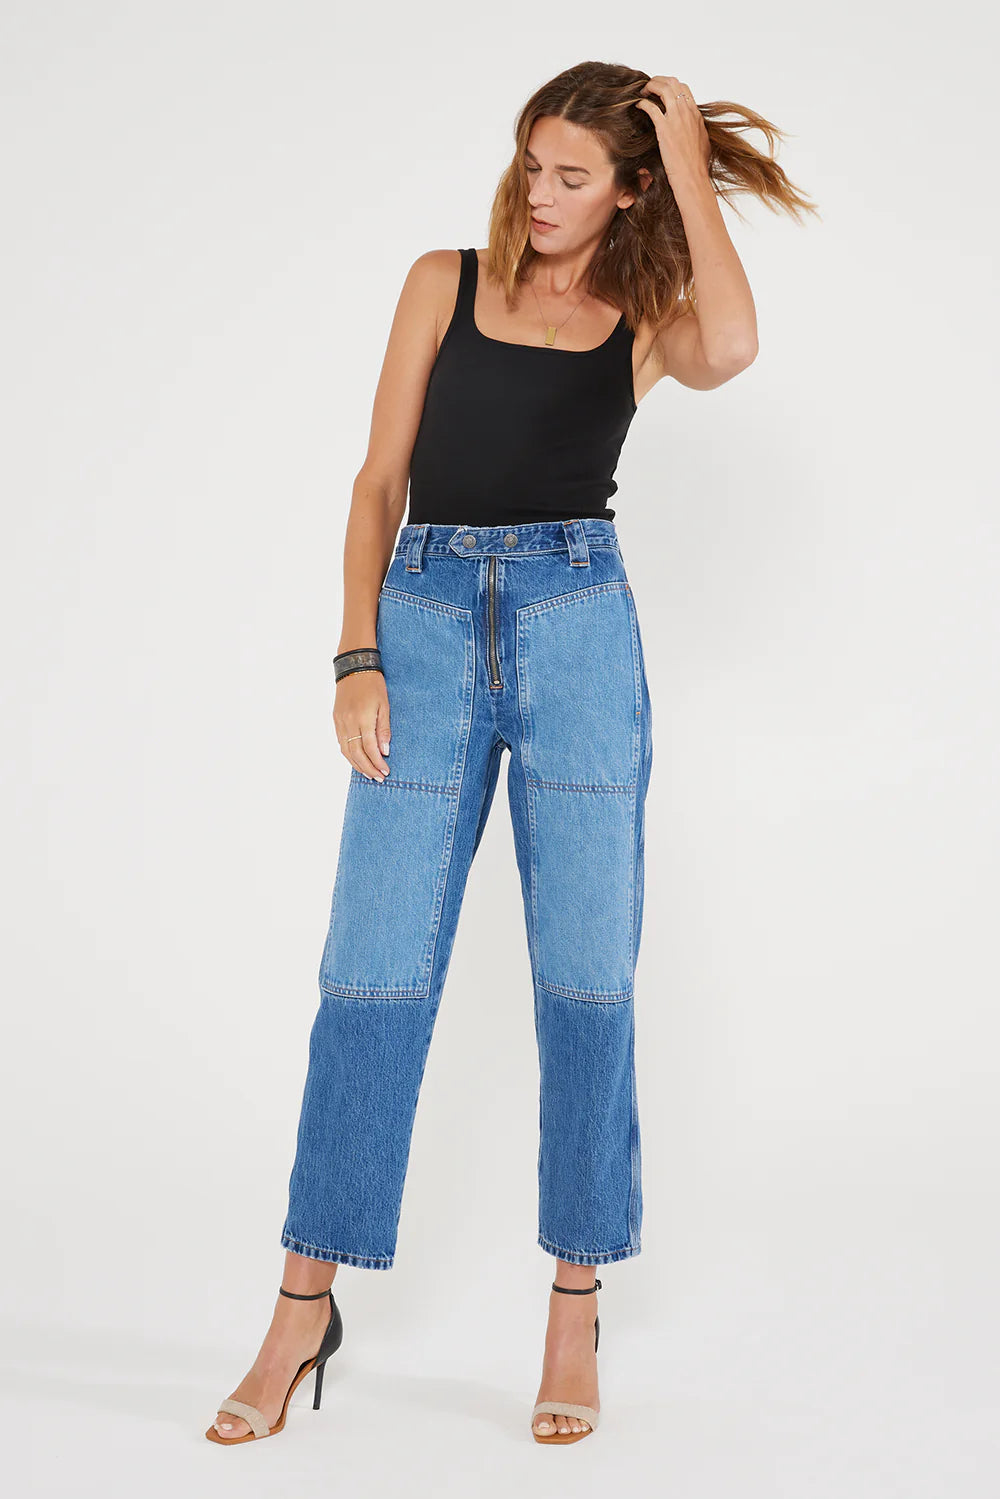 ÉTICA Orion Slim Two-Tone Carpenter Jeans